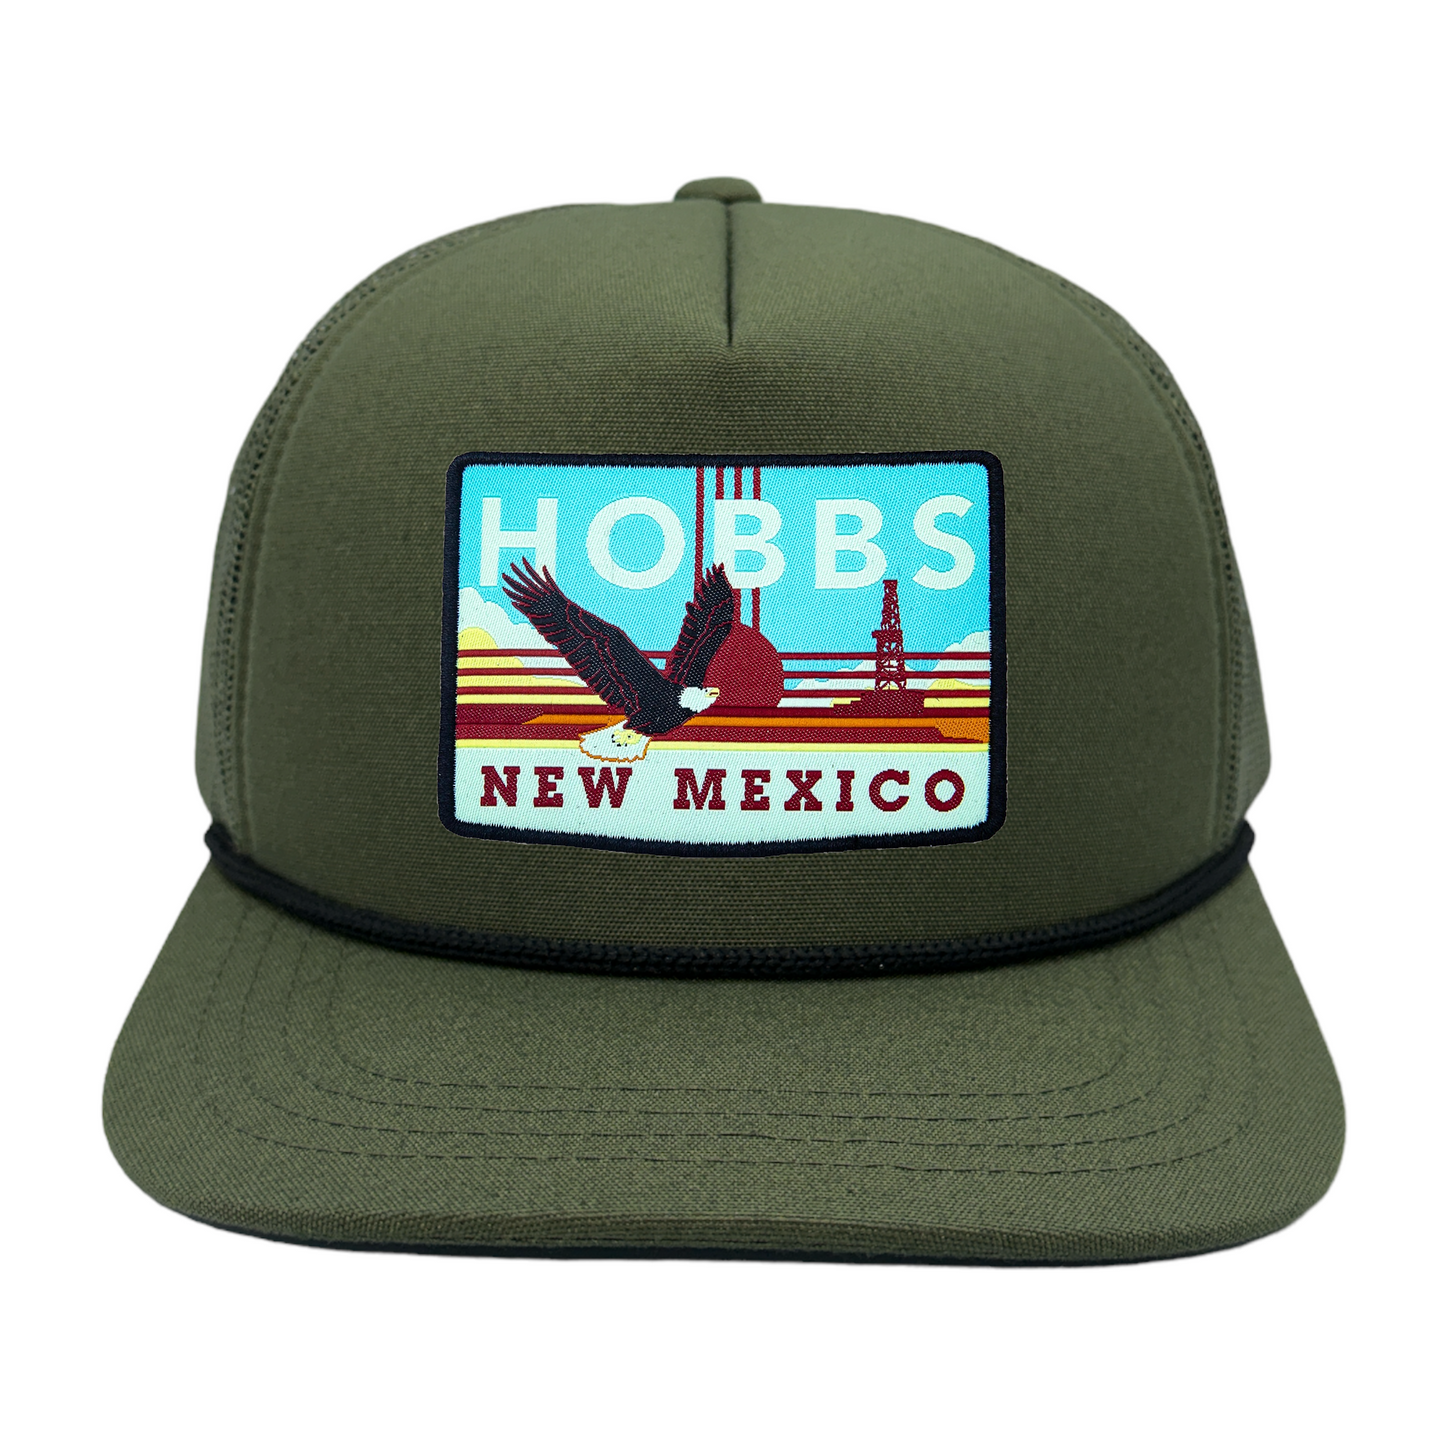 Hobbs, NM Trucker